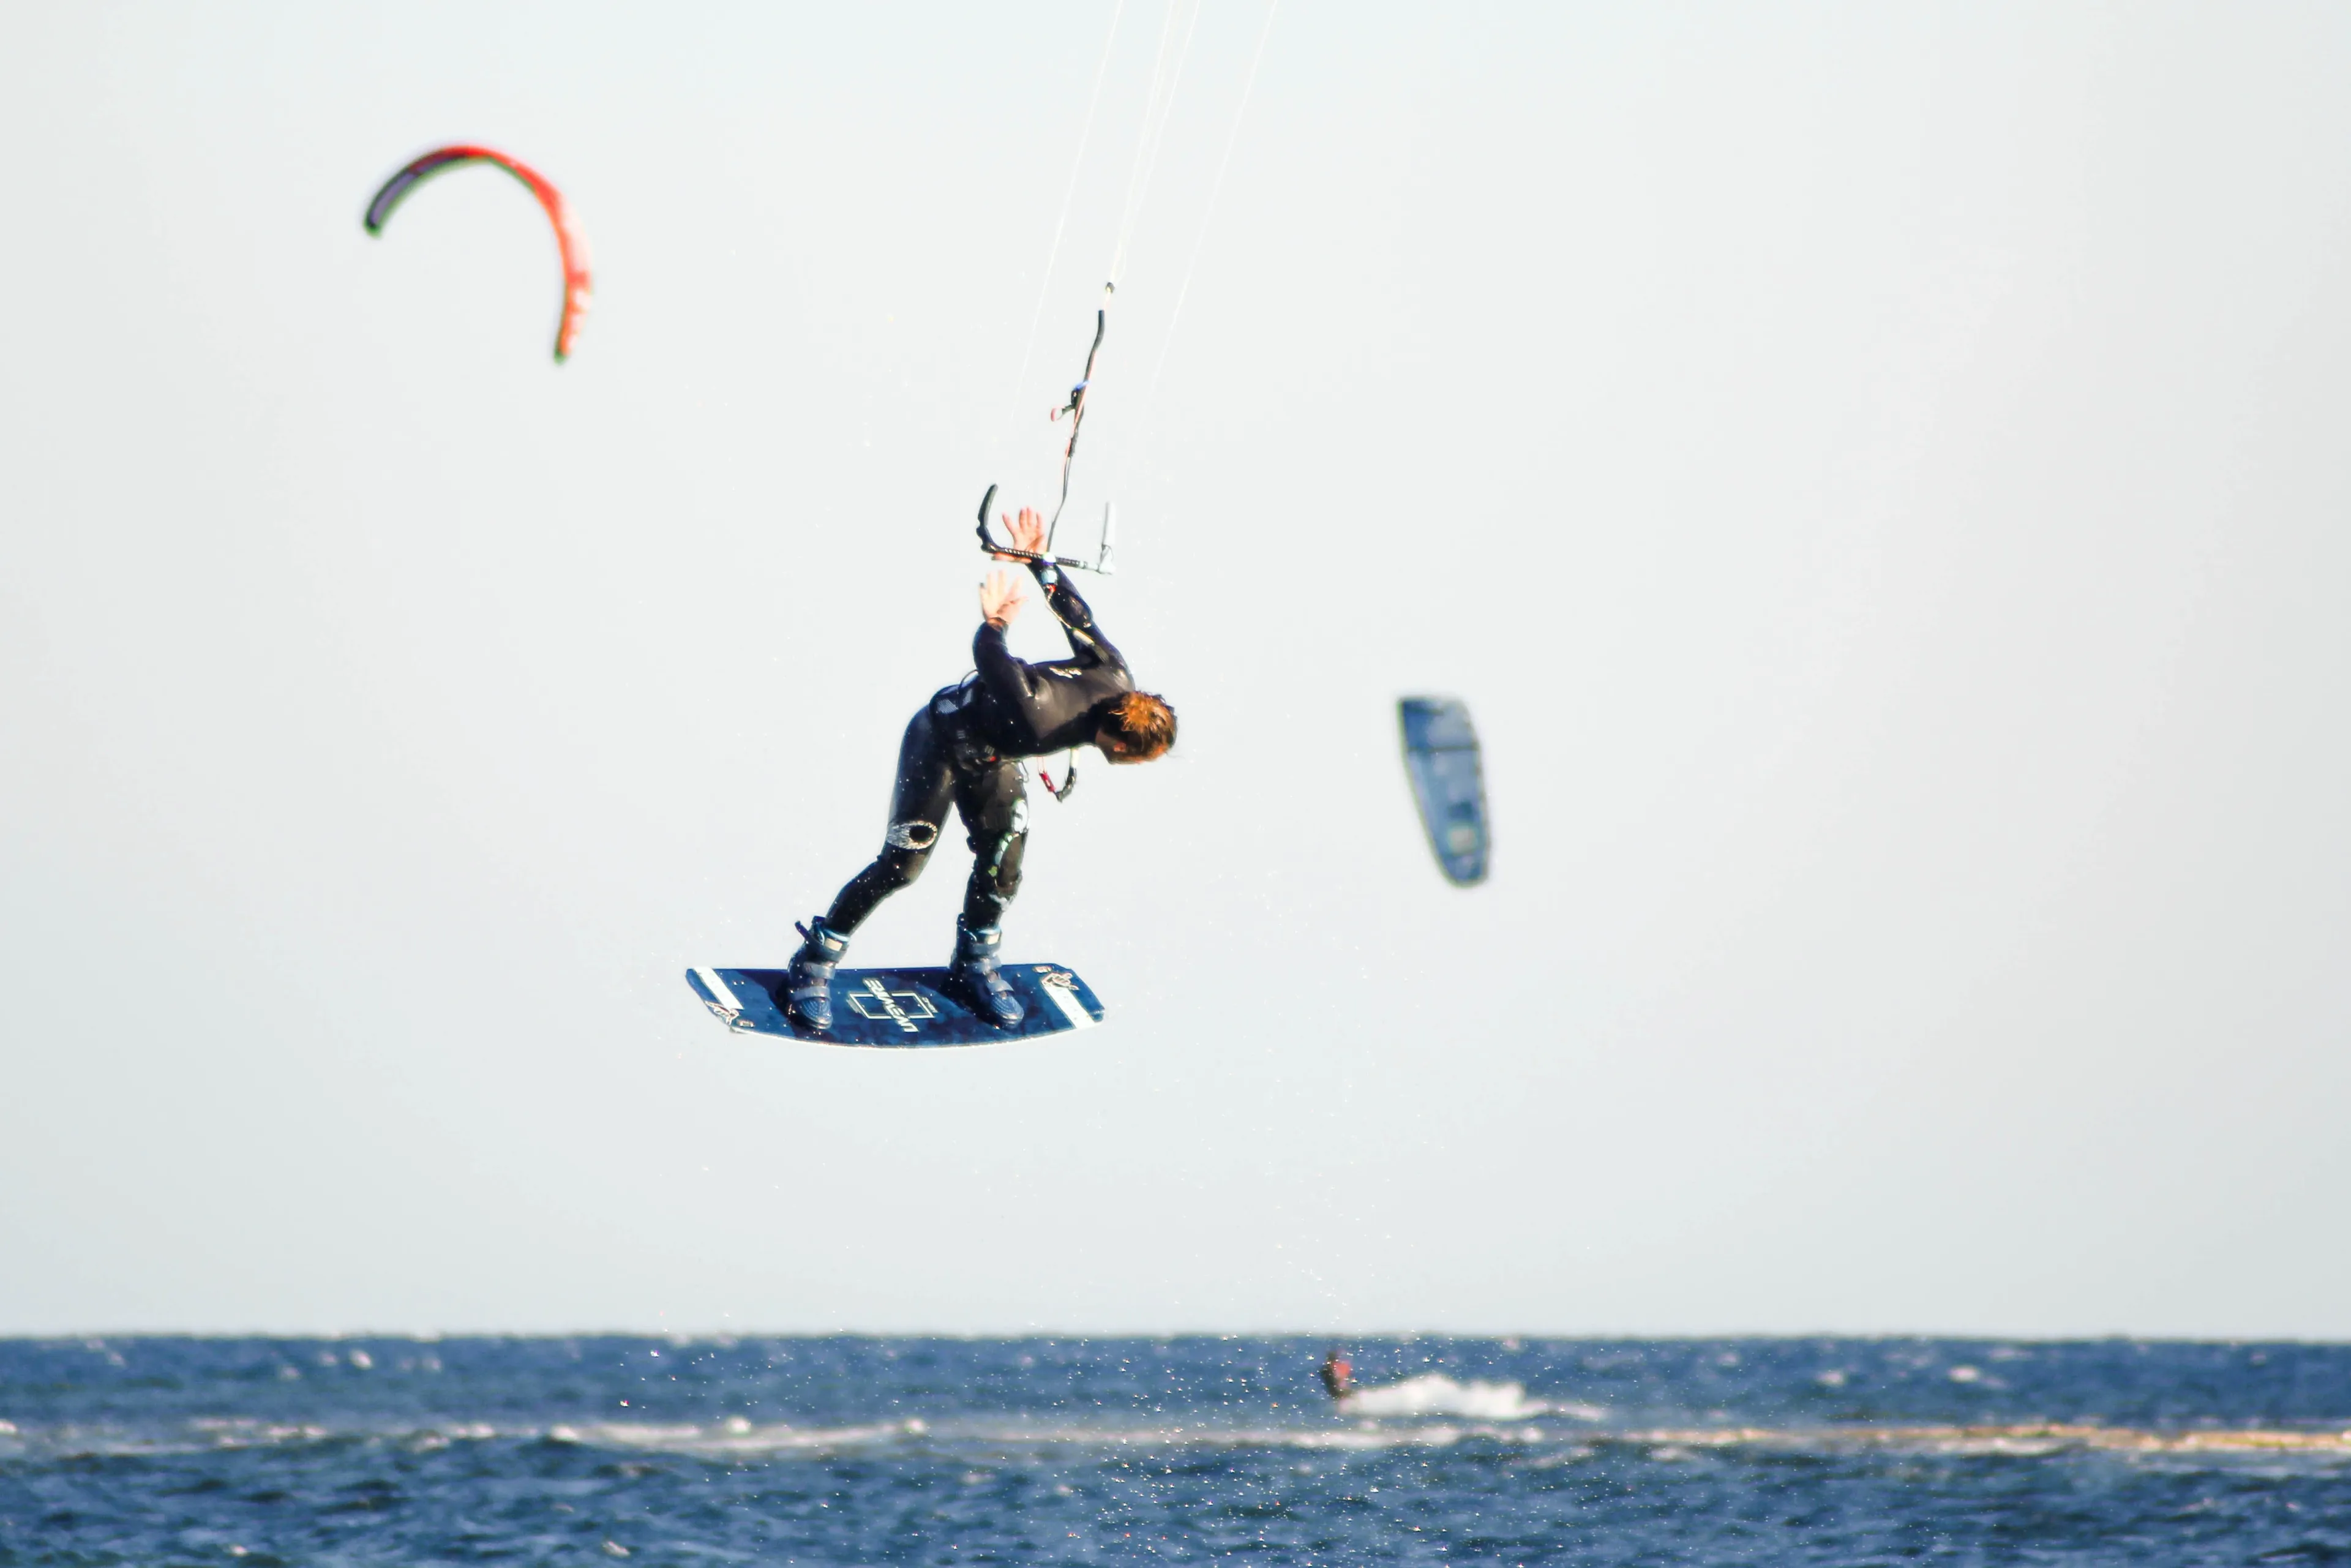 handlepass unhooked kitesurfing